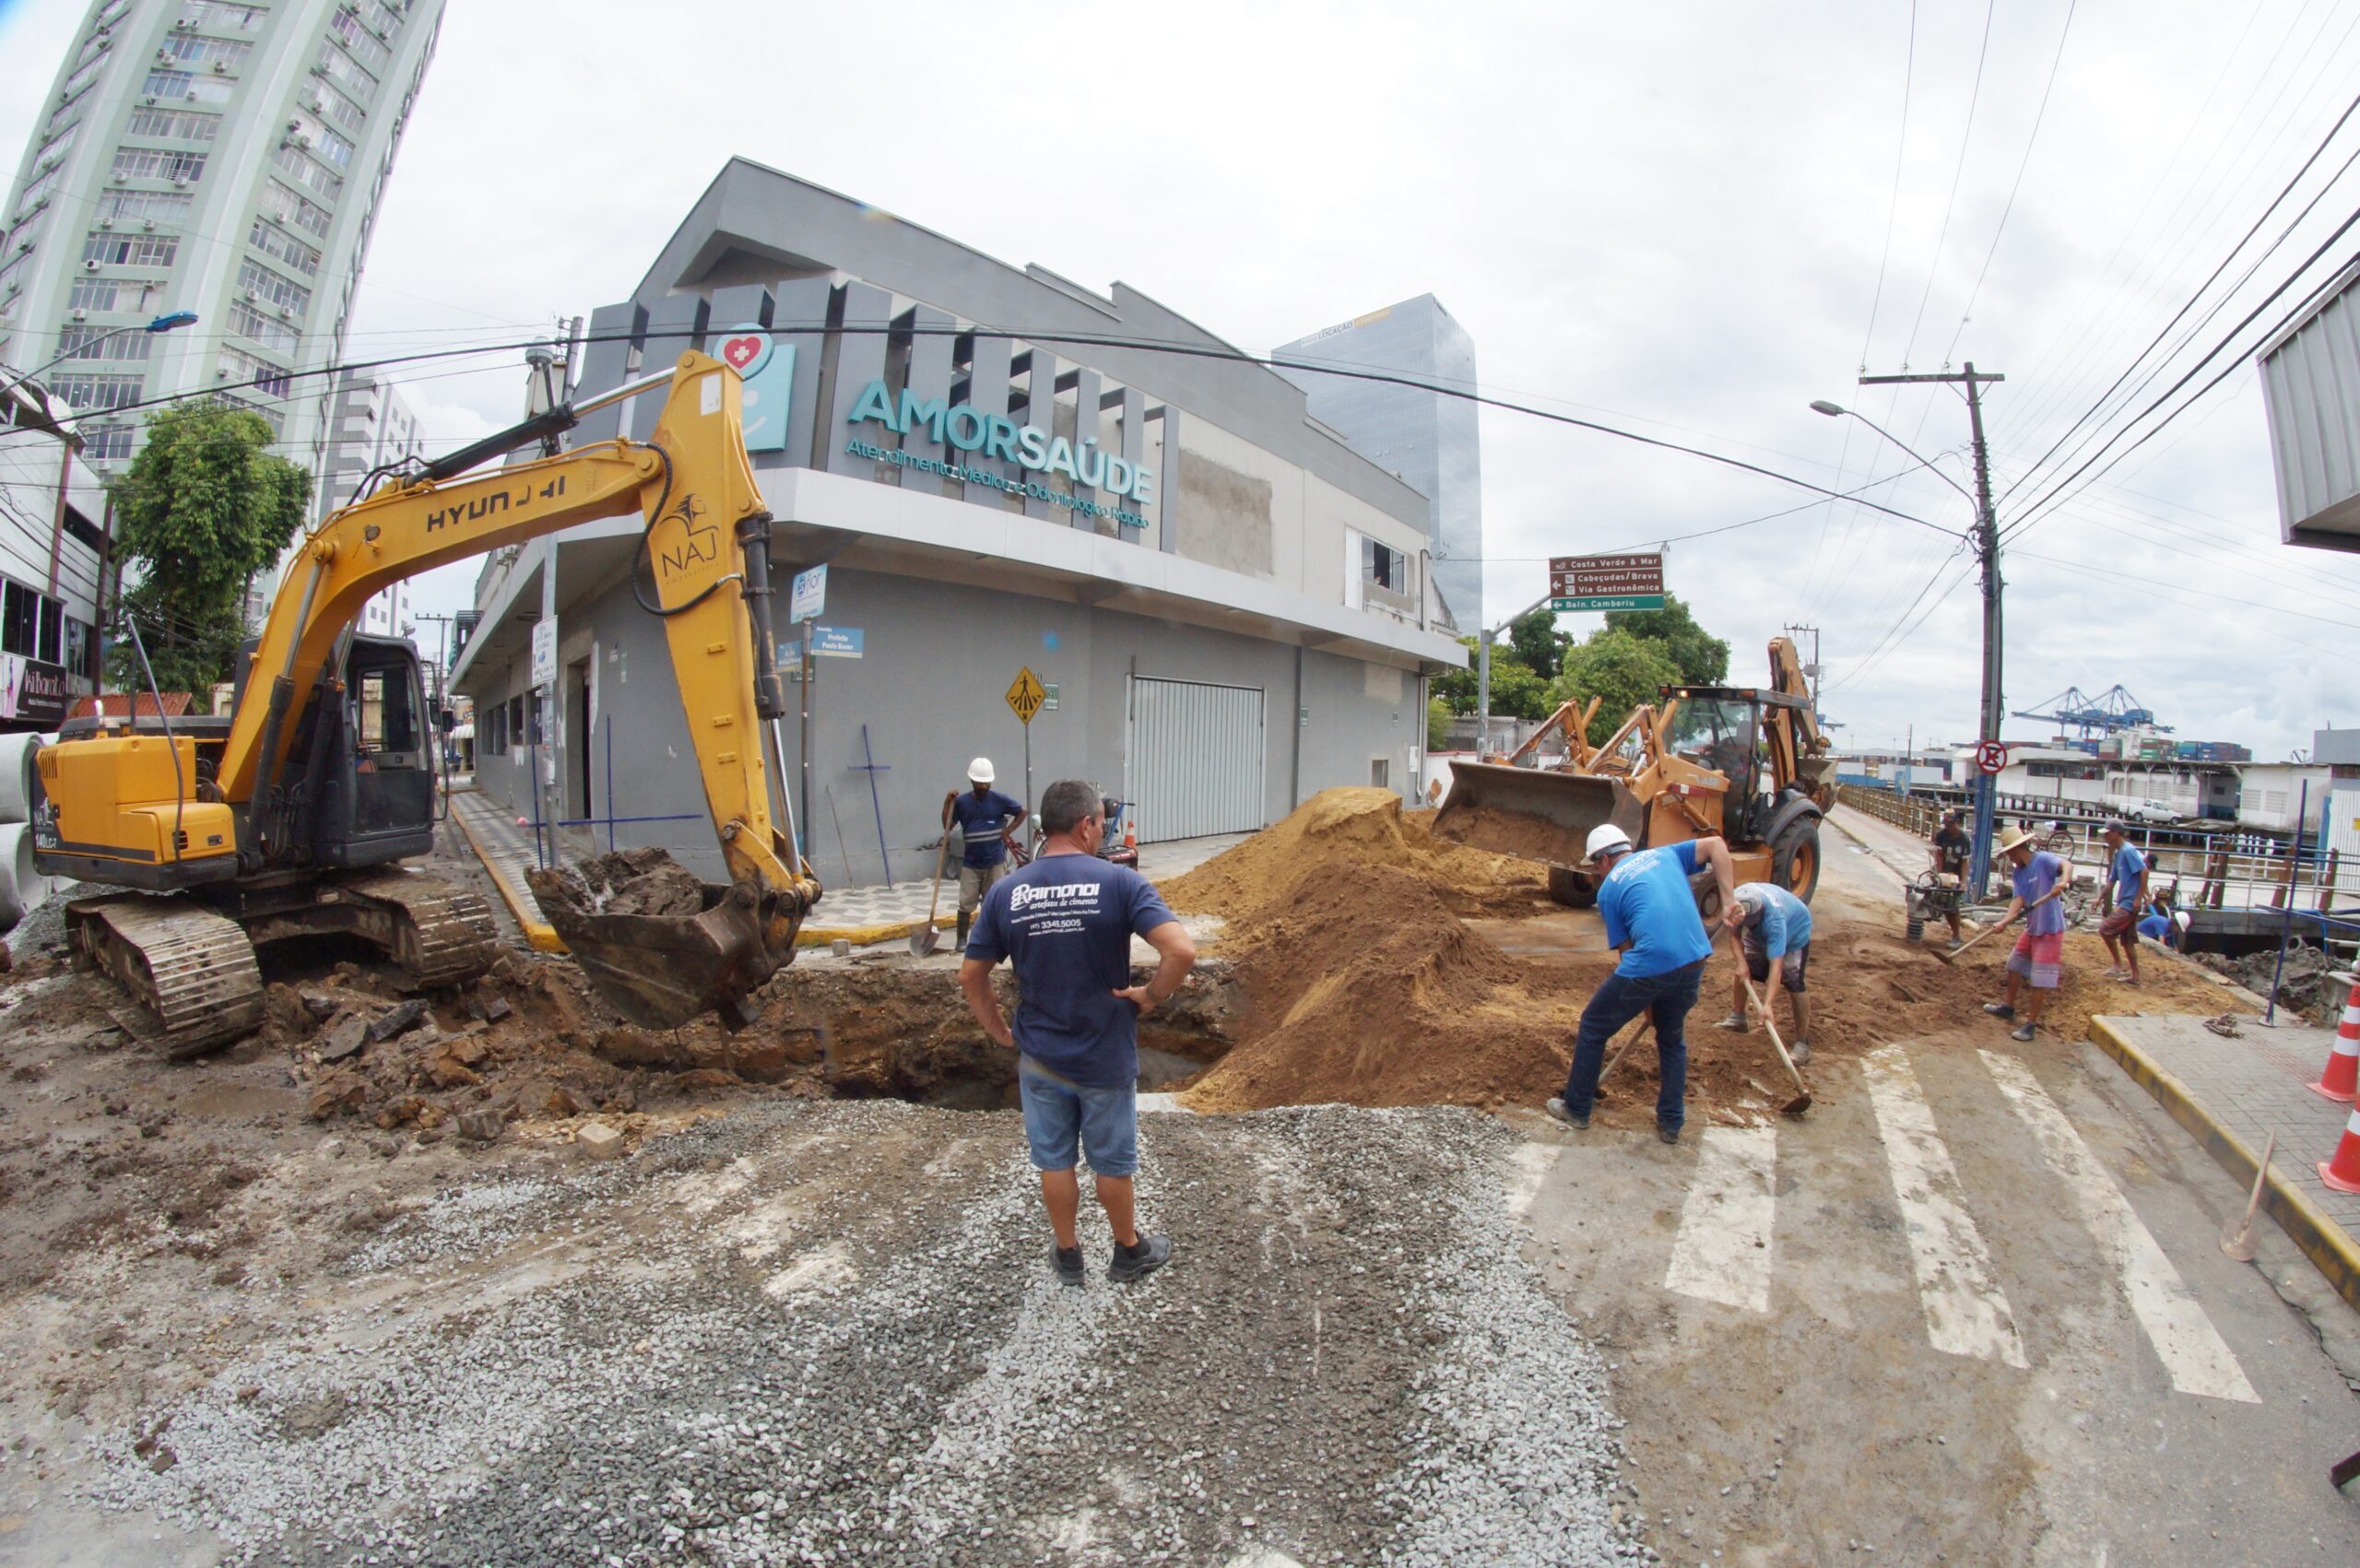 Trânsito interrompido quarta-feira: Rua Pedro Ferreira ficará interditada para retirada de asfalto e calçadas